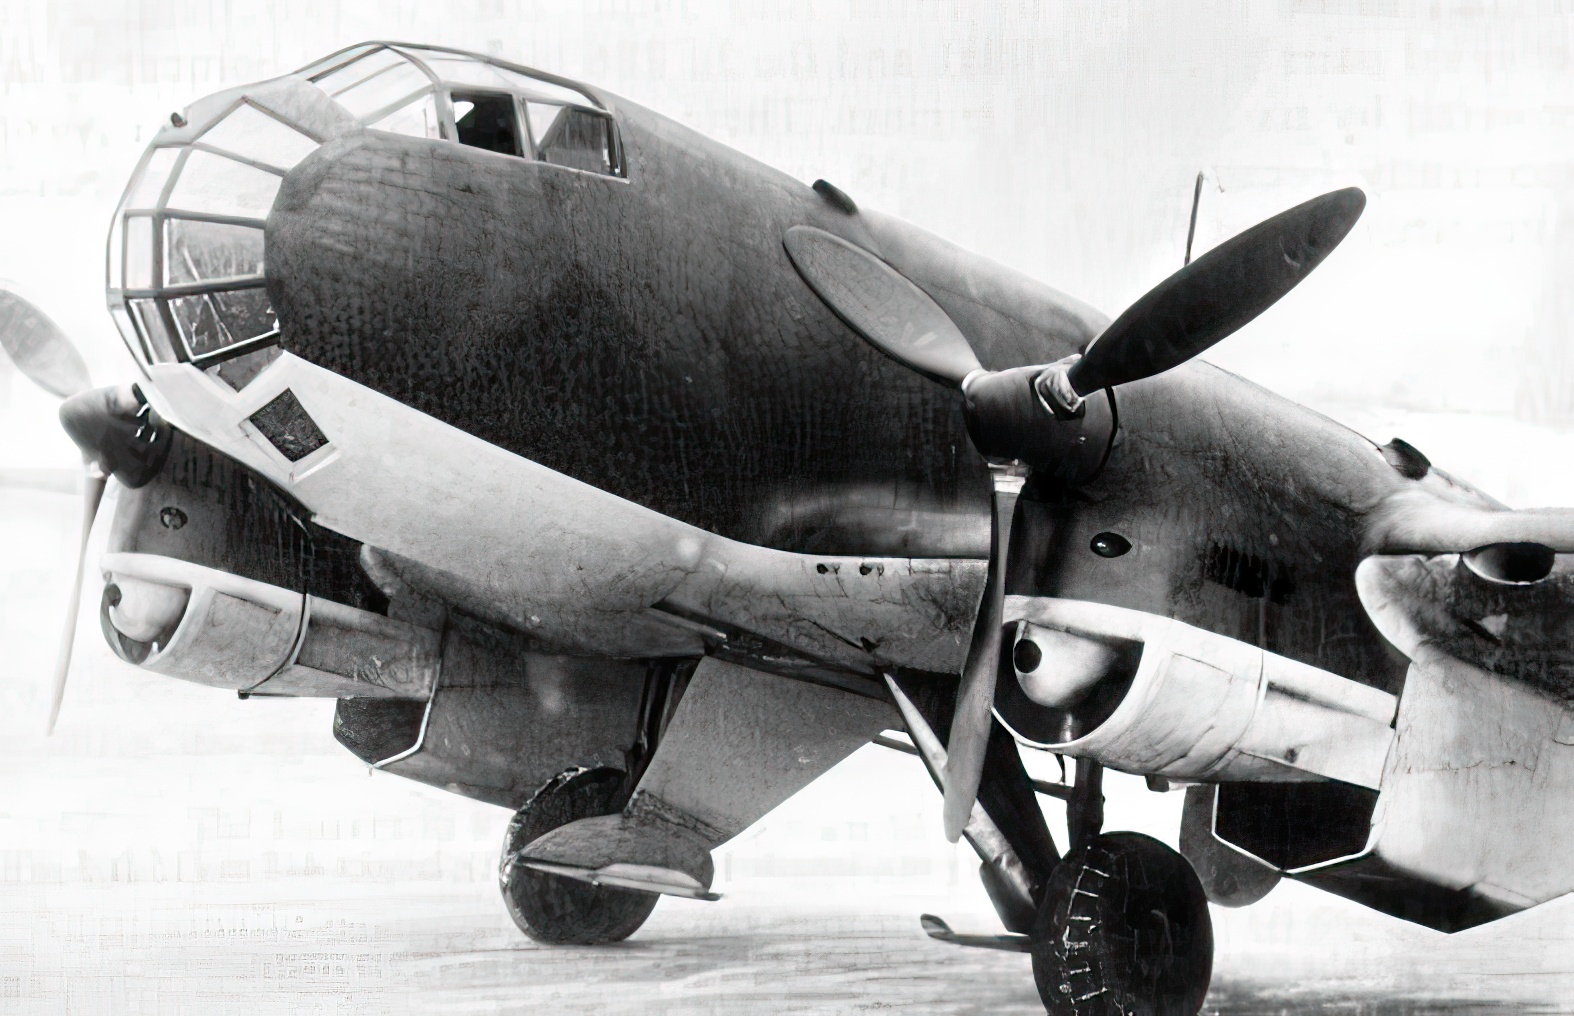 Ju 86P high-altitude reconnaissance aircraft